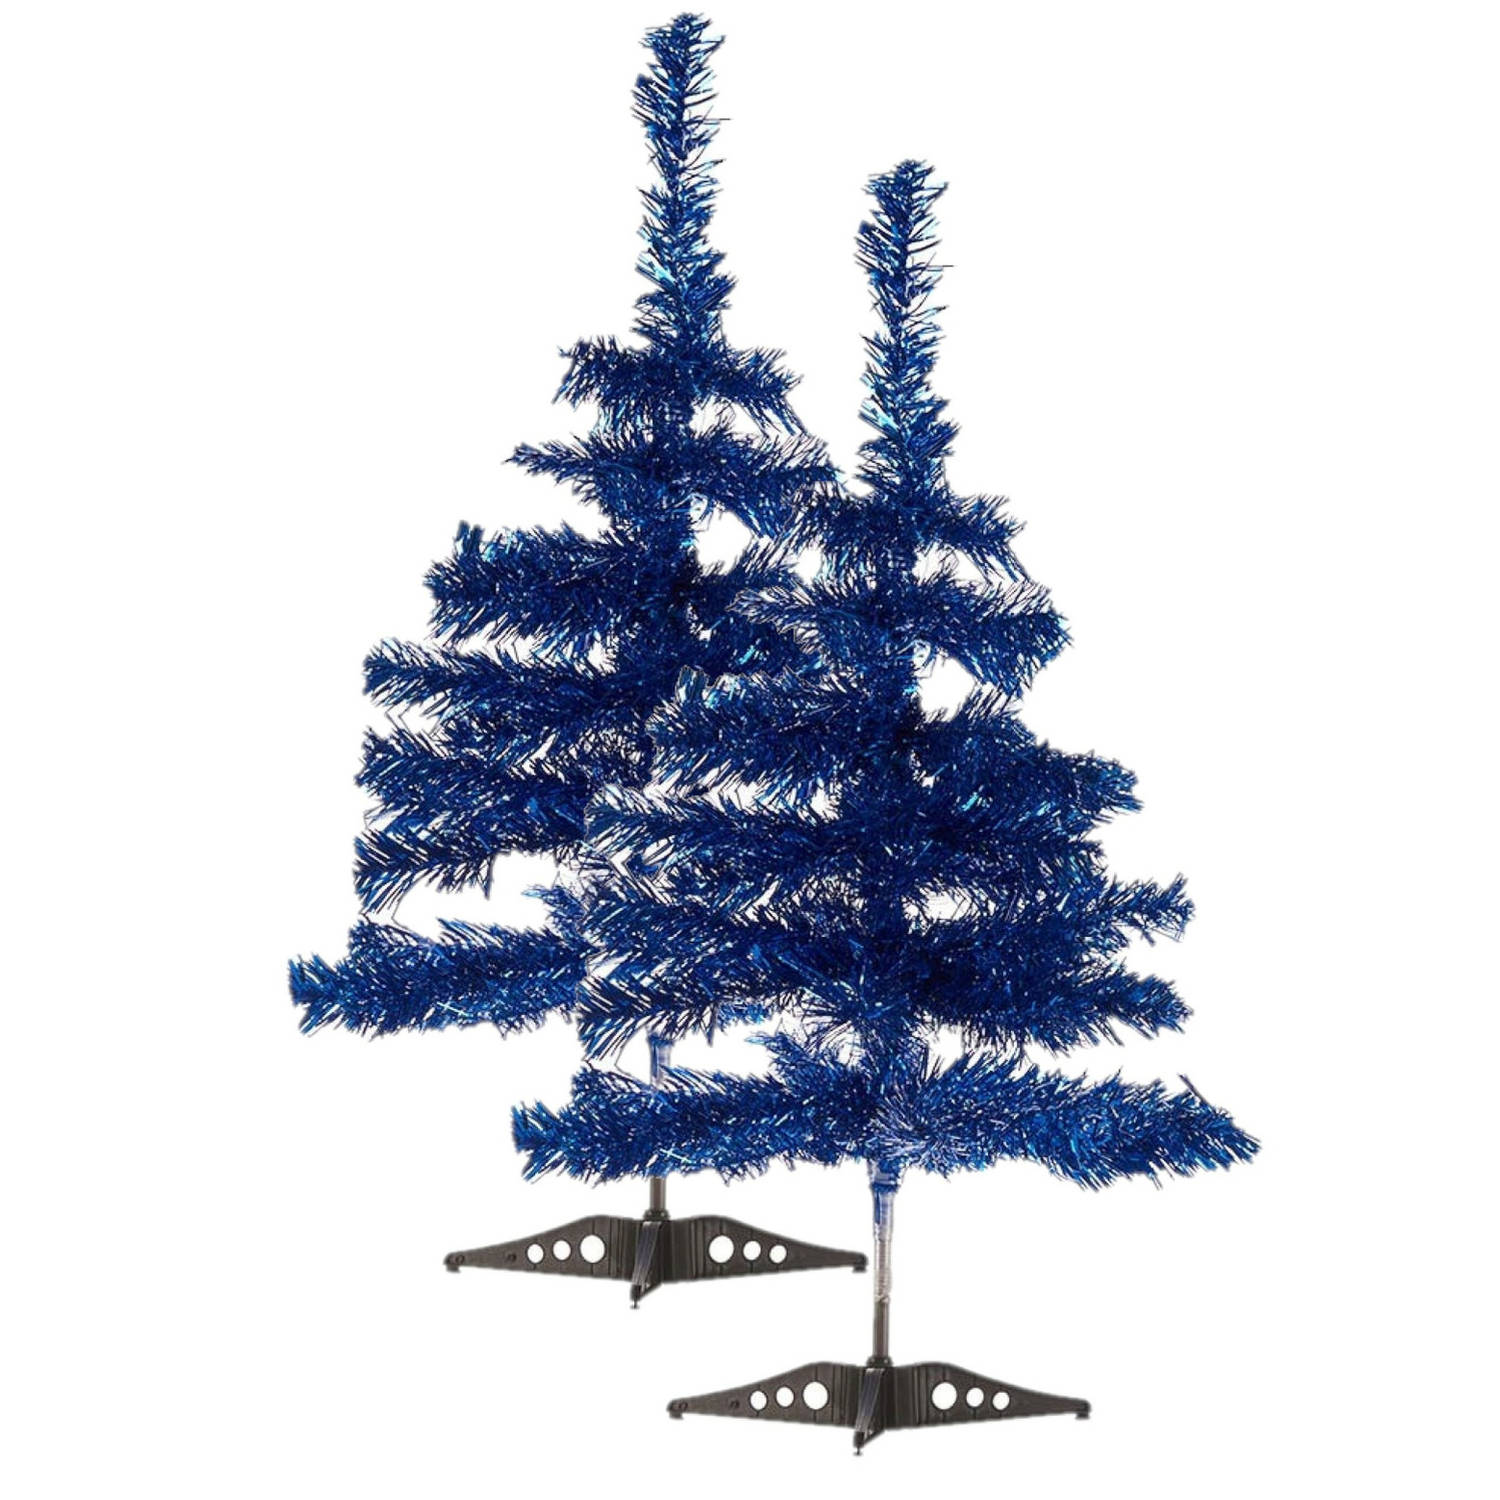 2x stuks kleine ijsblauwe kerstbomen van 60 cm - Kunstkerstboom